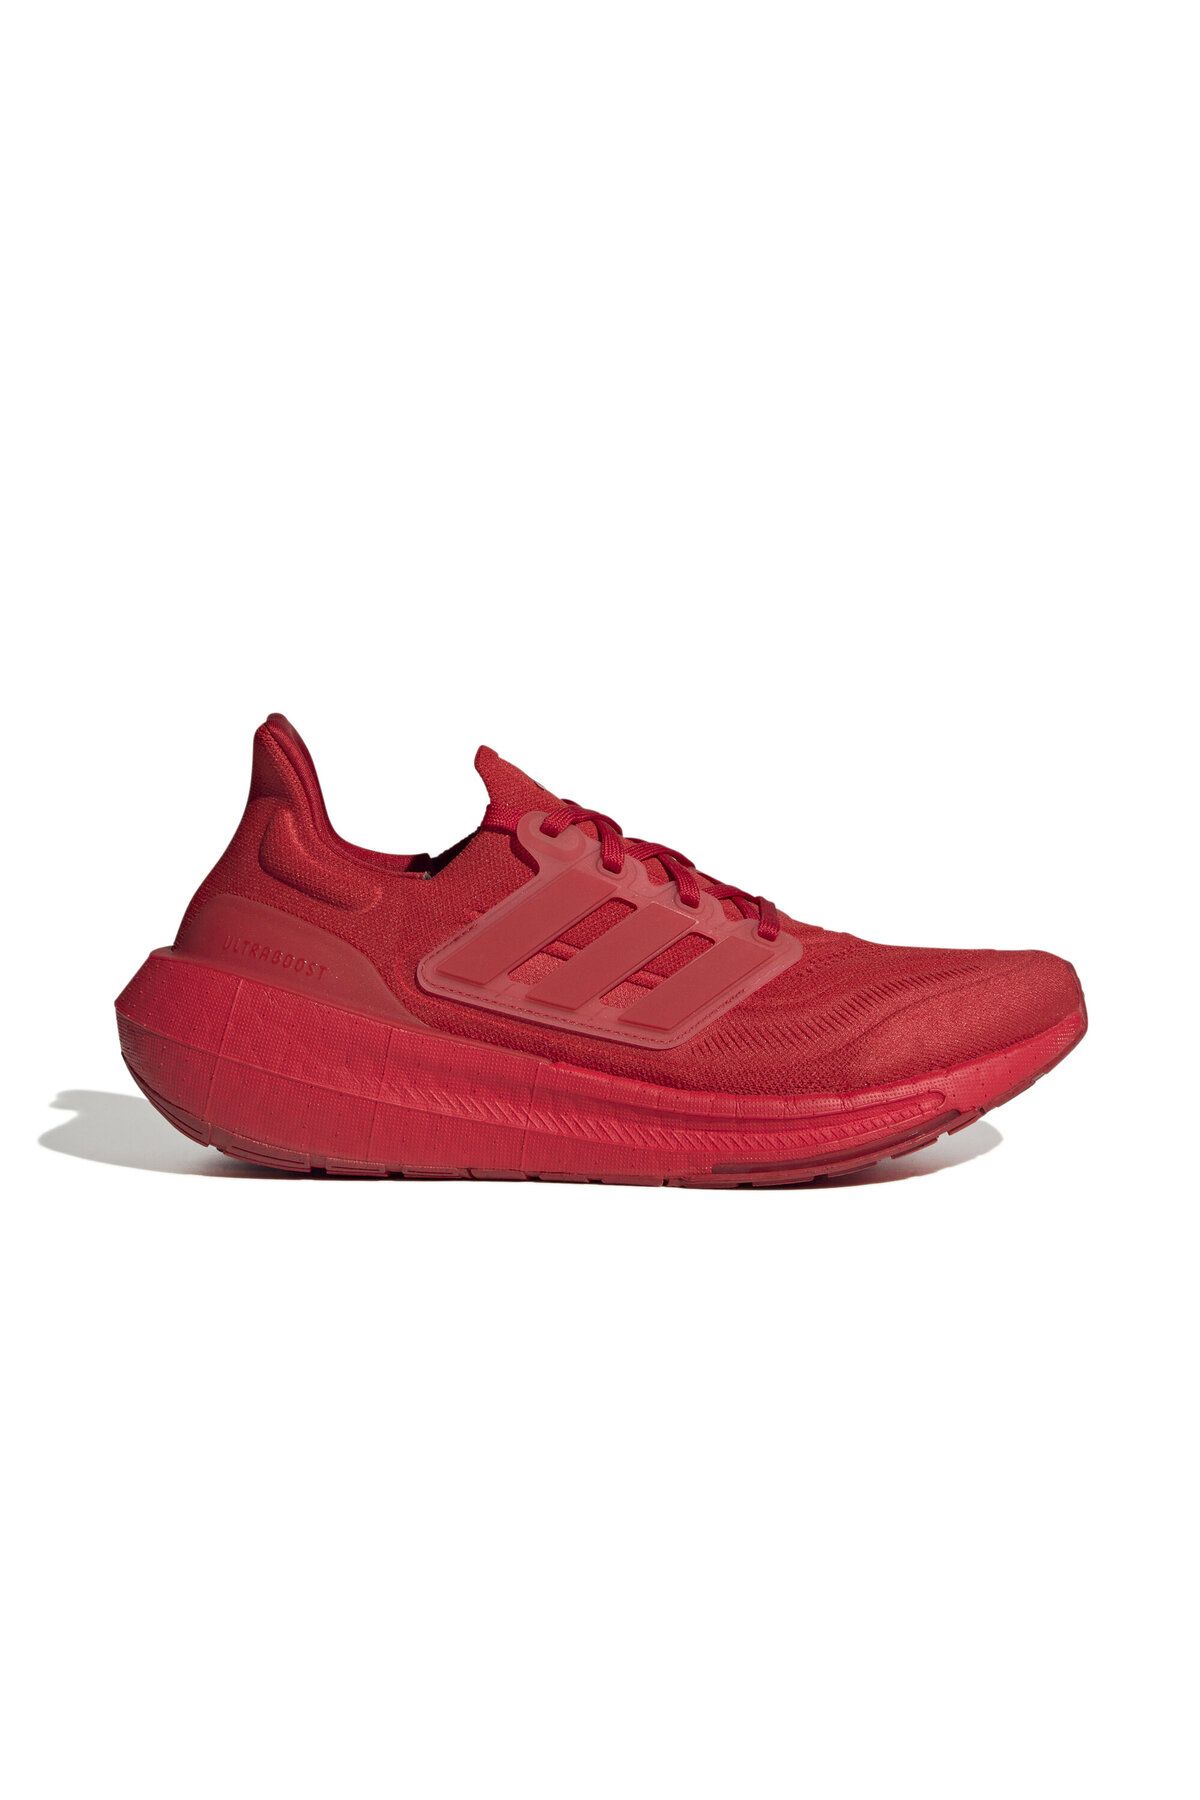 adidas Ultraboost Light Kadın Koşu Ayakkabısı IE3042 Kırmızı